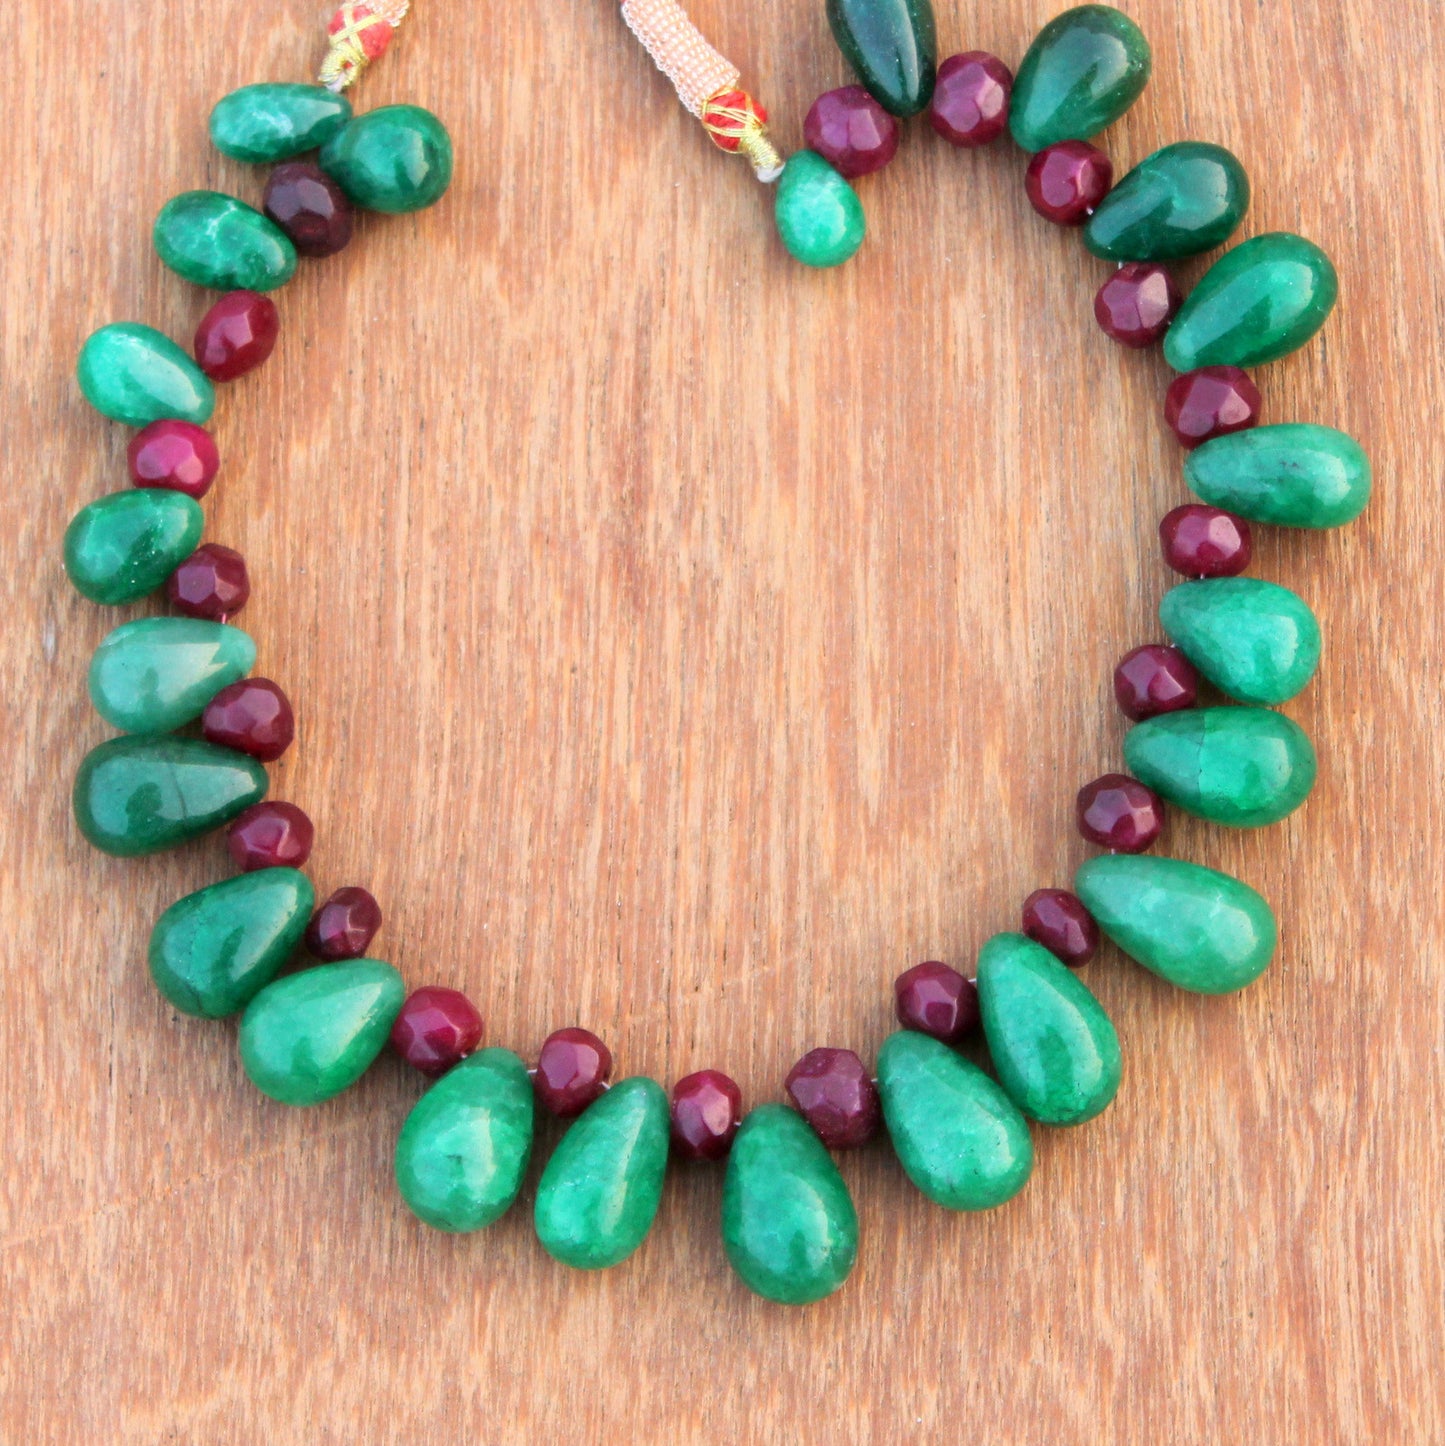 Rainbow stone necklace